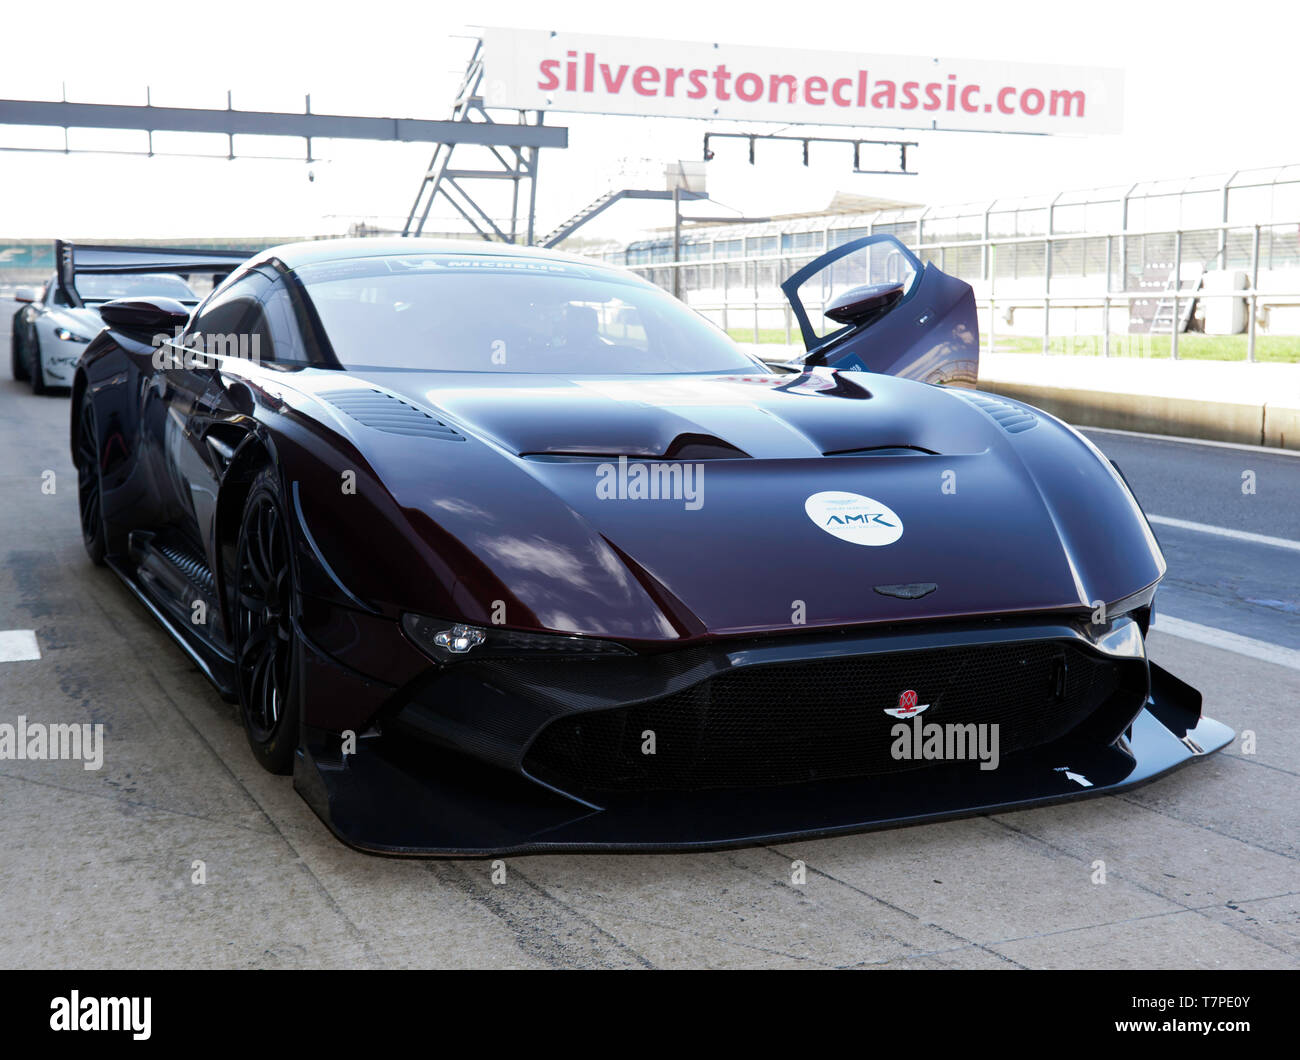 Vue frontale d'un Vulcan 2018 Aston Martin AMR Pro dans la voie des stands lors de la Journée des médias classique Silverstone 2019 Banque D'Images